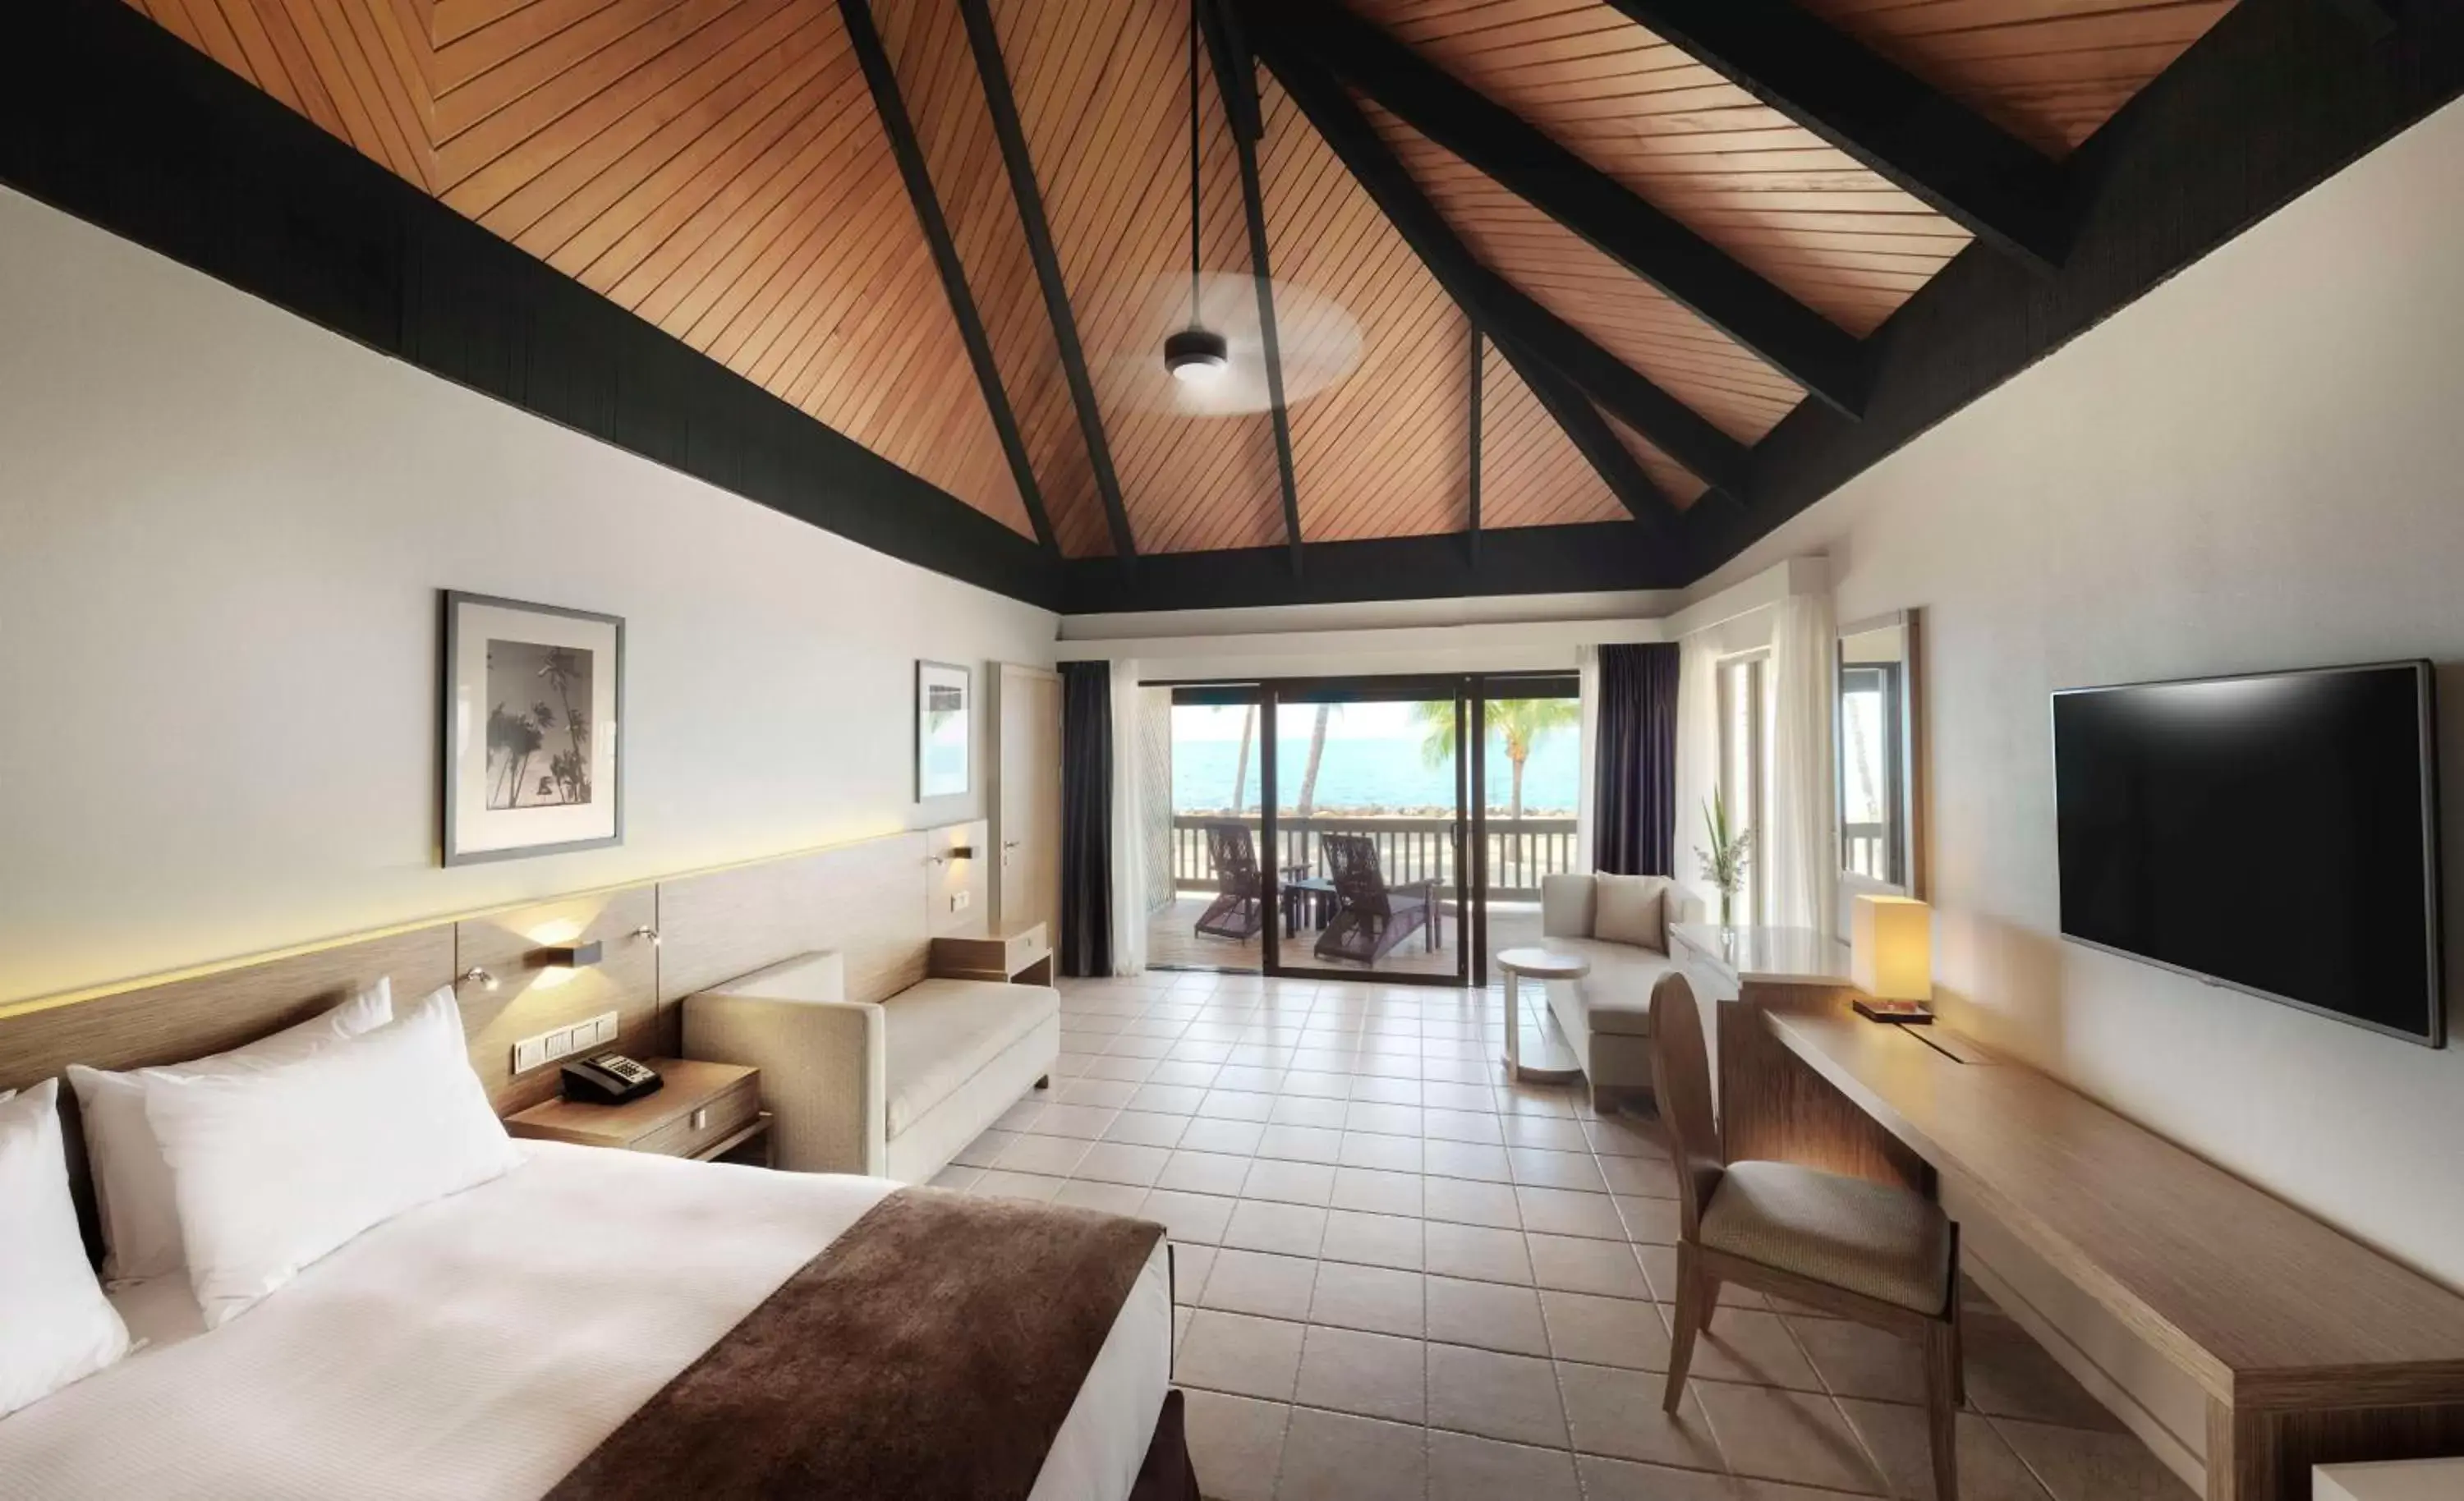 Bedroom in DoubleTree by Hilton Fiji - Sonaisali Island